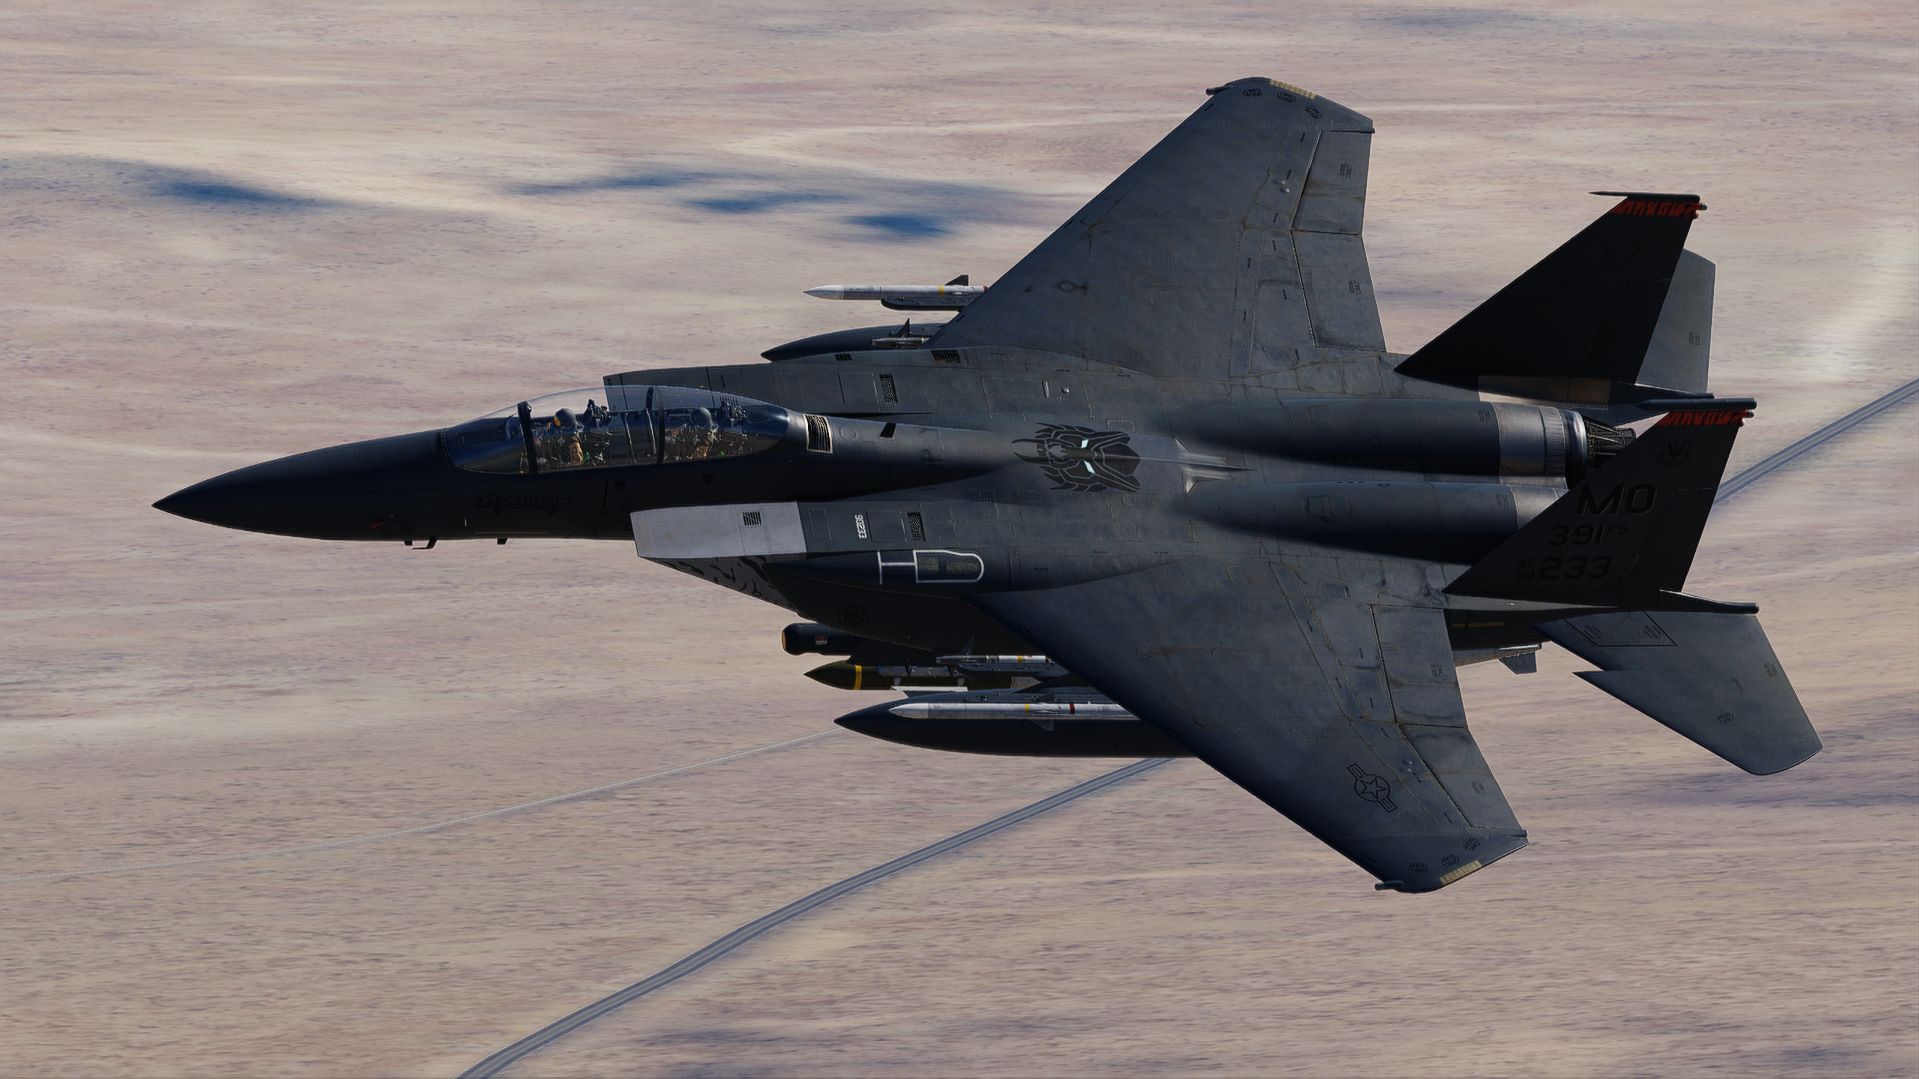 F-15E Strike eagle MO 90-233 "Sable" (UPDATED)